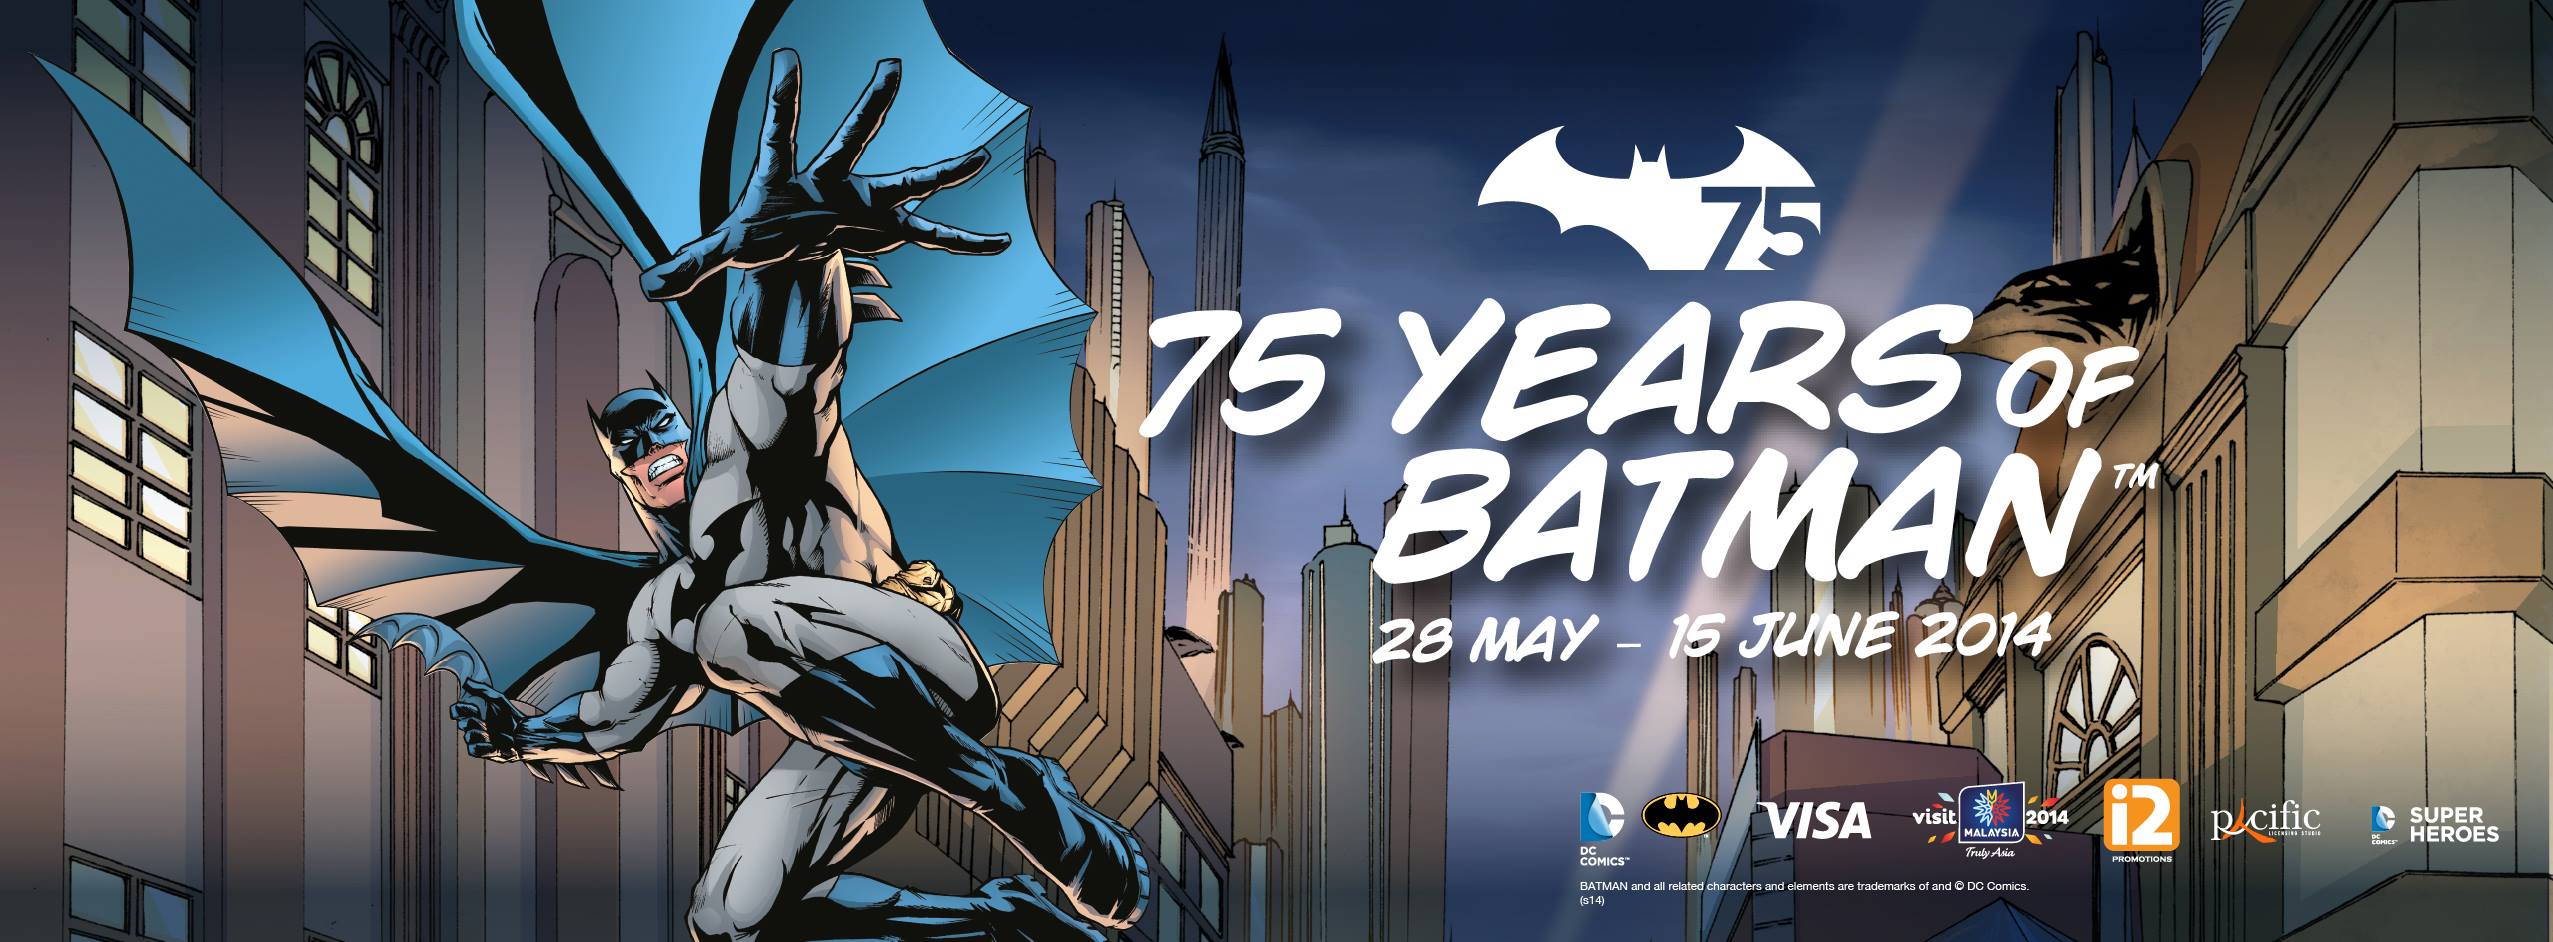 Batman Exhibition at Pavilion KL - ExpatGo